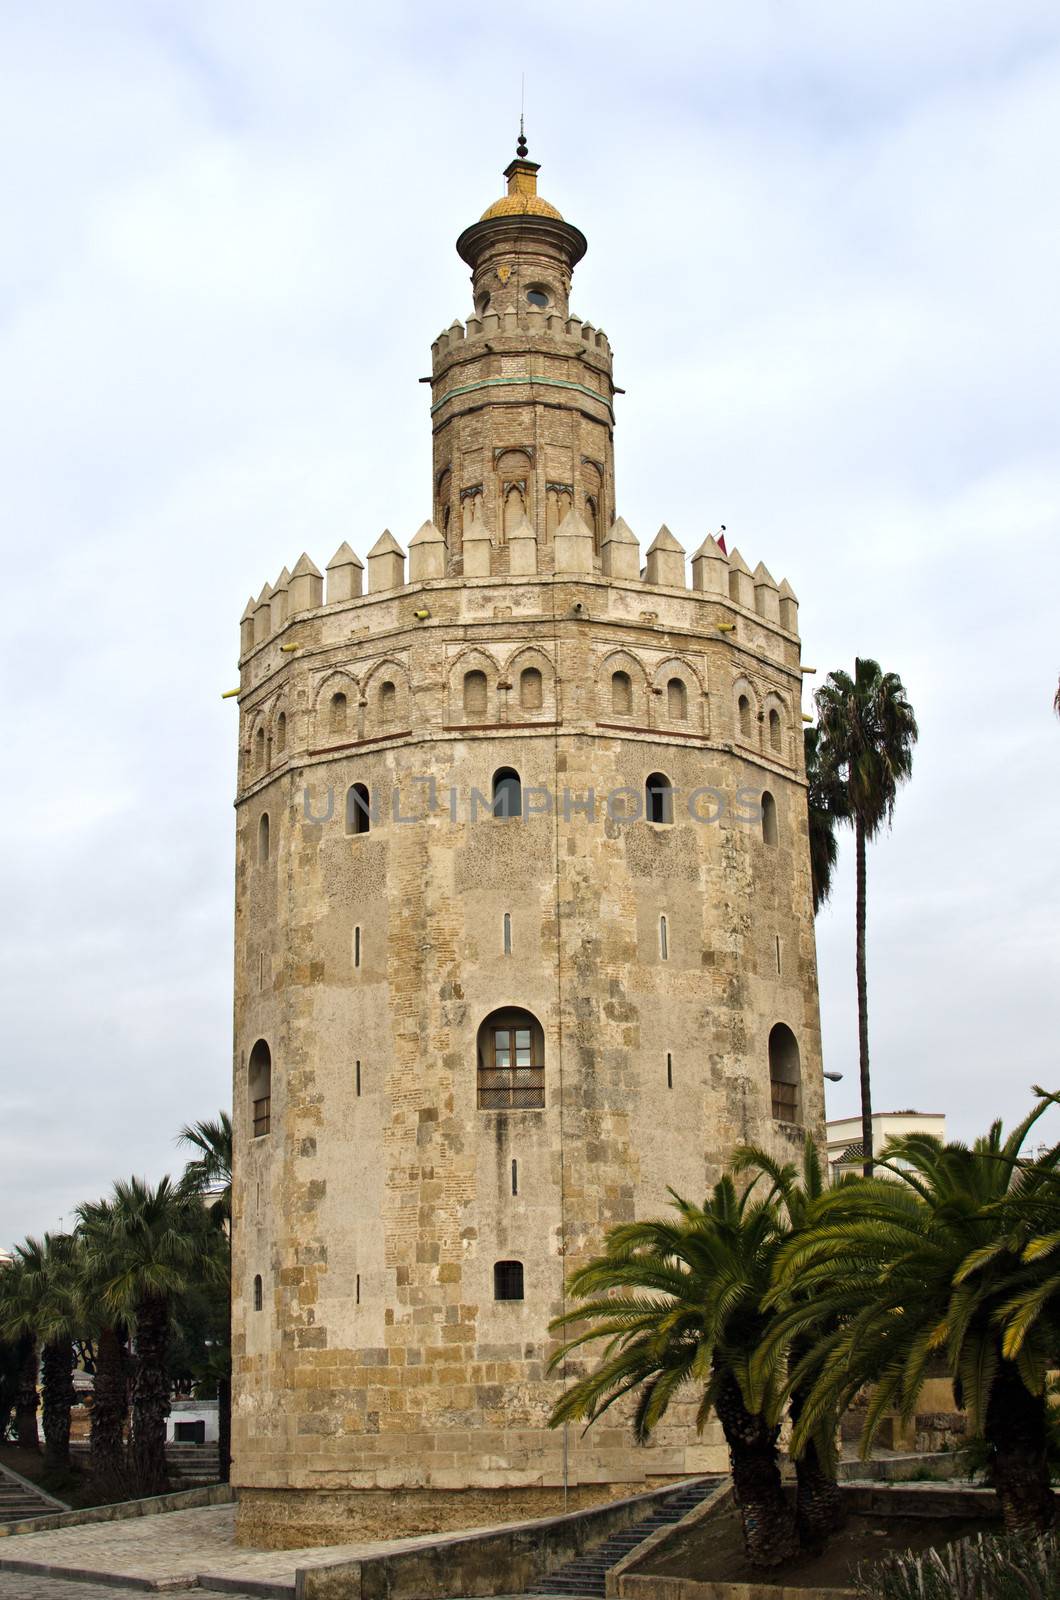 torre del oro in sevilla by lauria